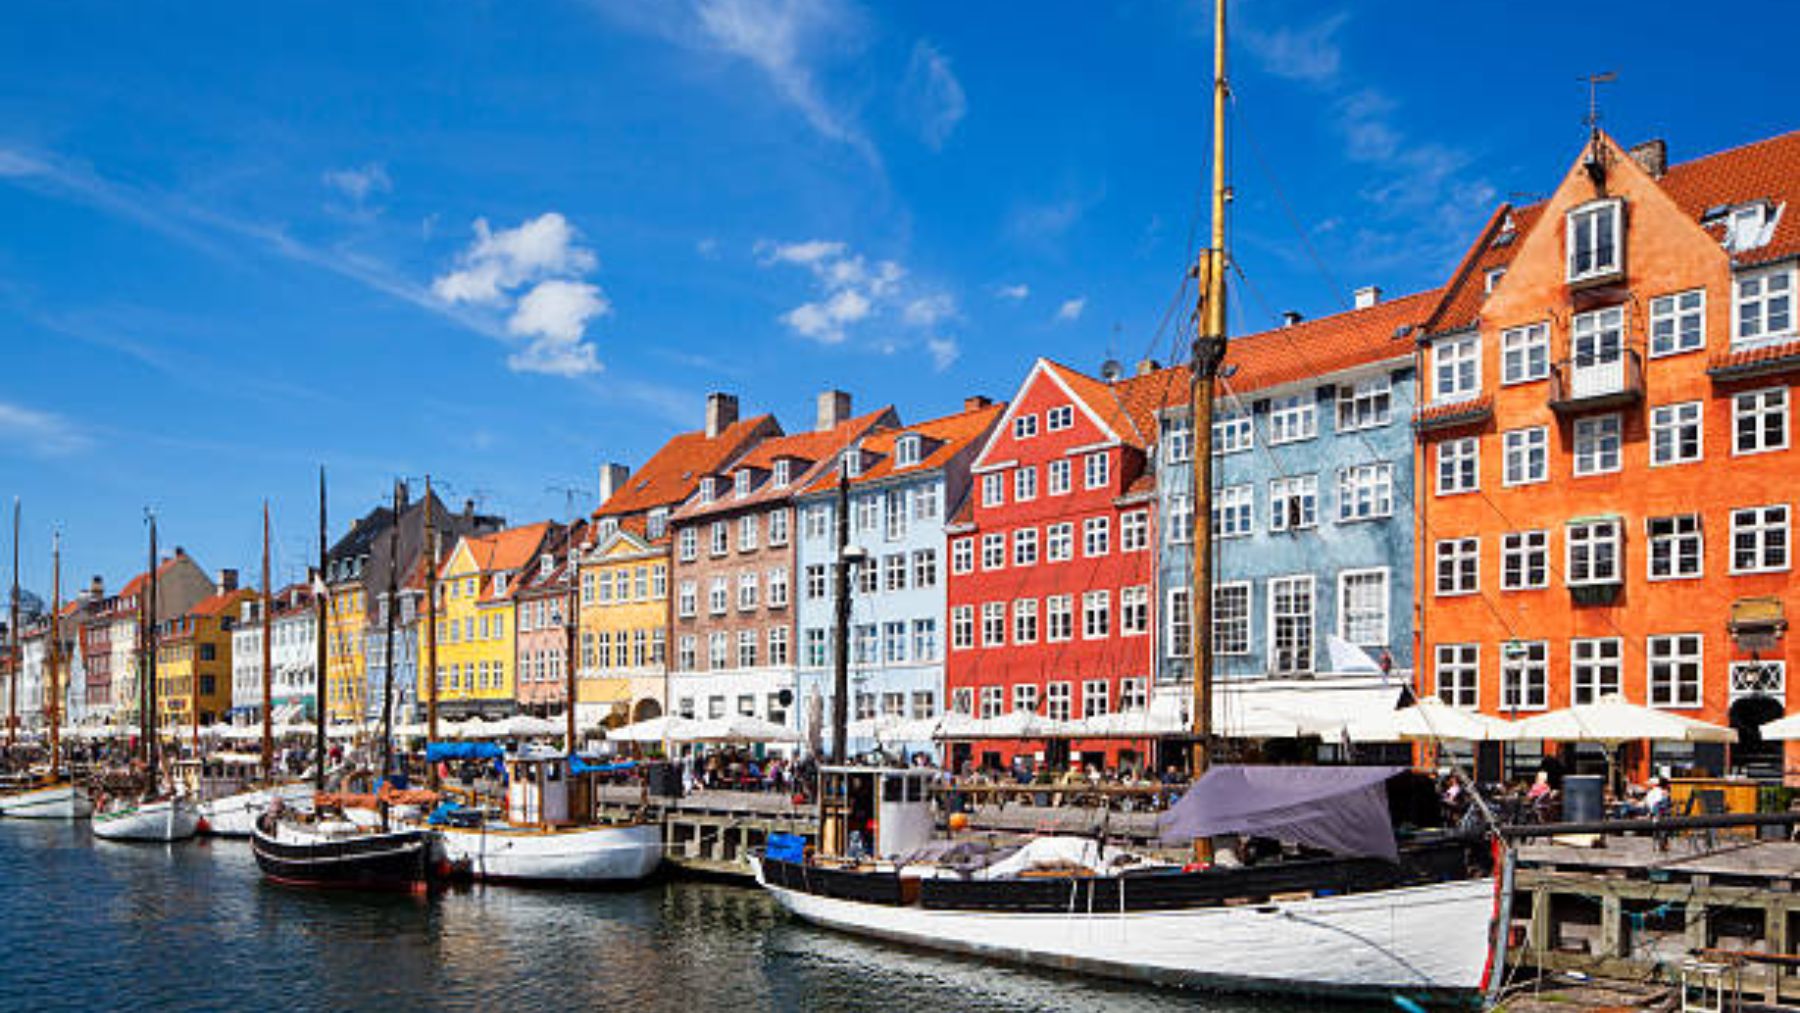 Descubre algunas de las curiosidades más sorprendentes cuando visites Copenhague